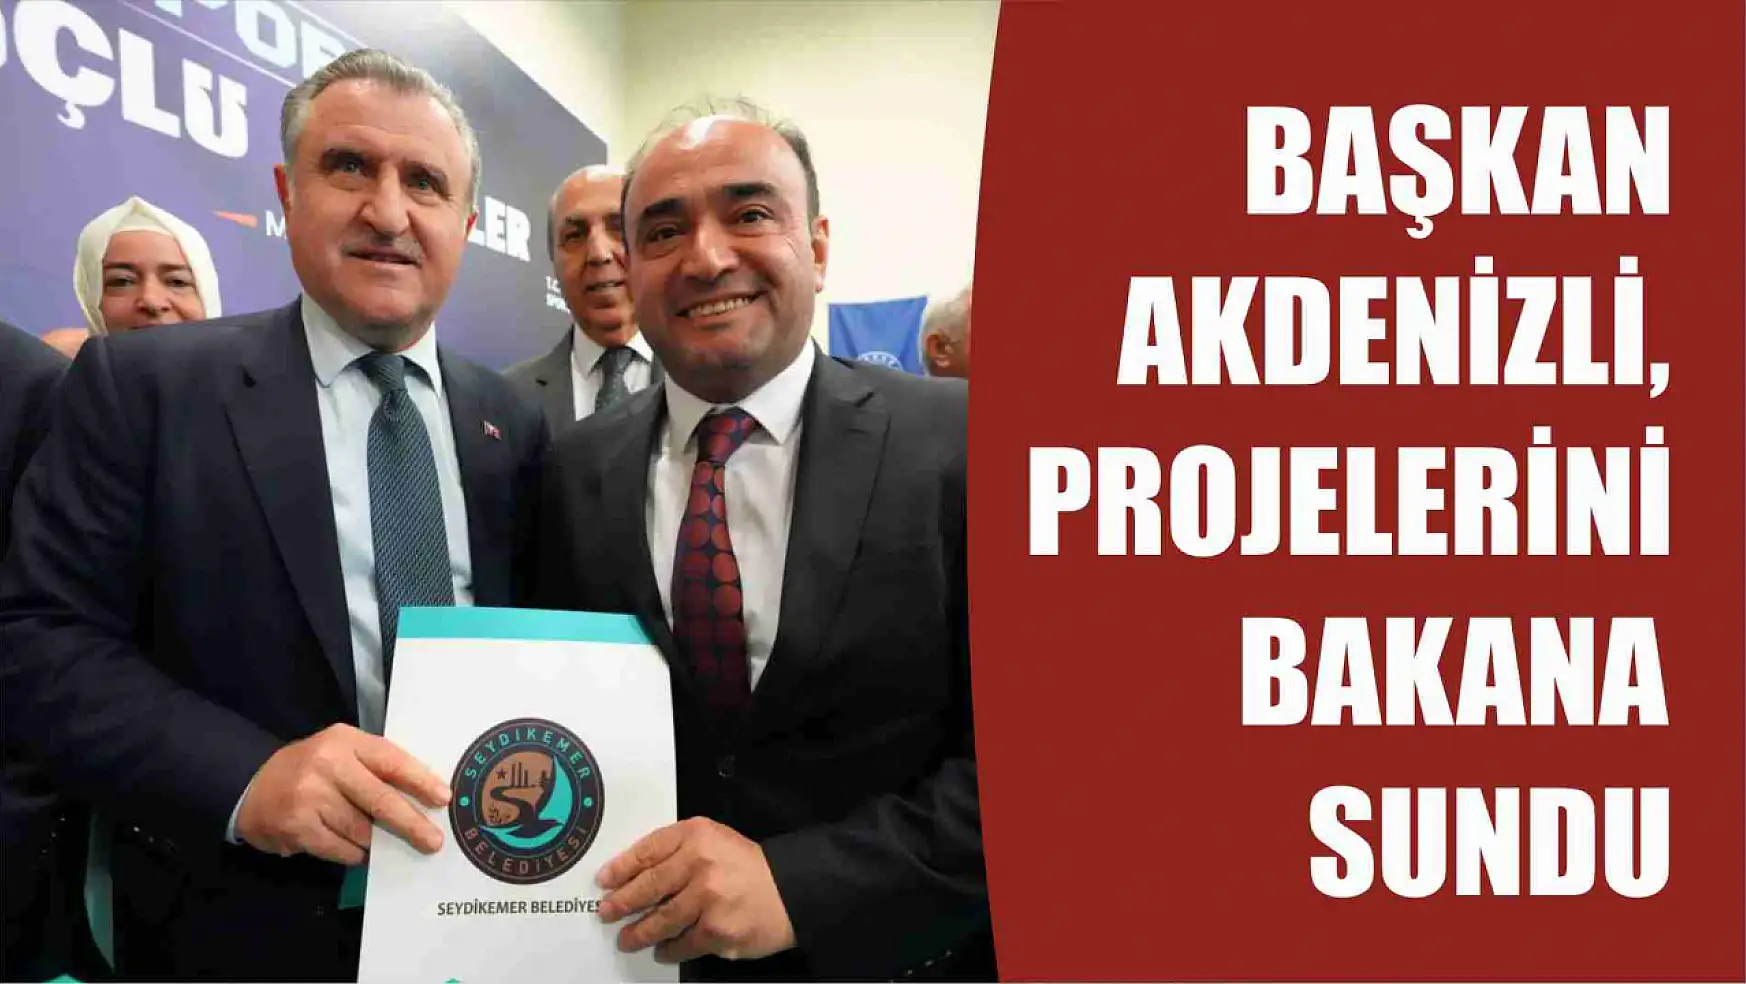 Başkan Akdenizli, Projelerini Bakana Sundu